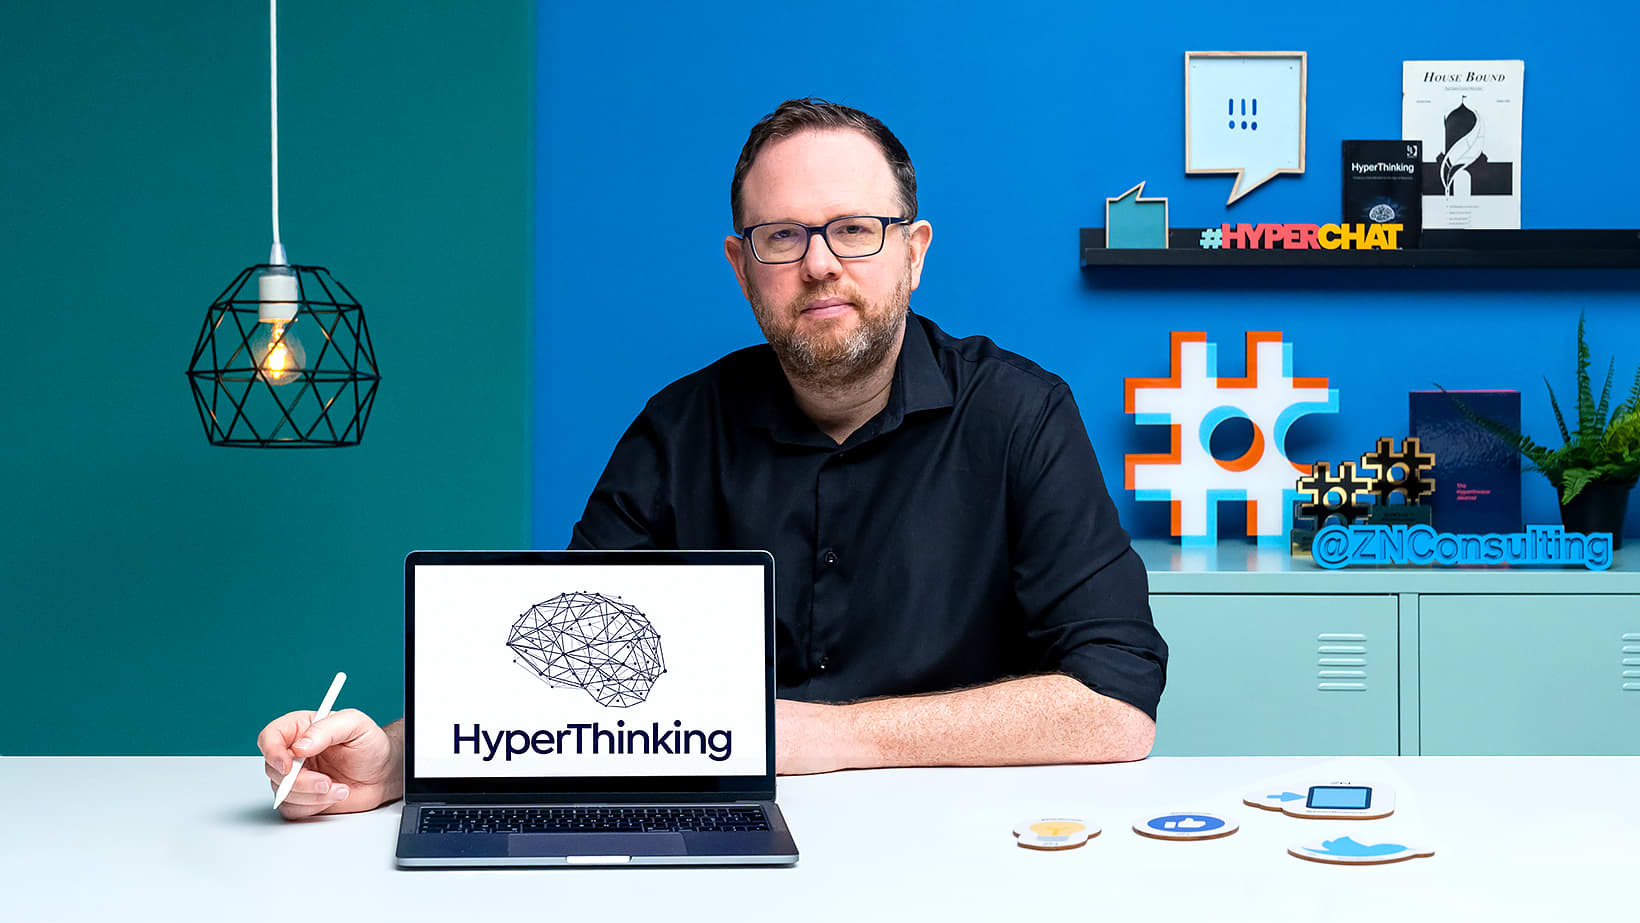 Personal Online Branding: HyperThinking Mindset